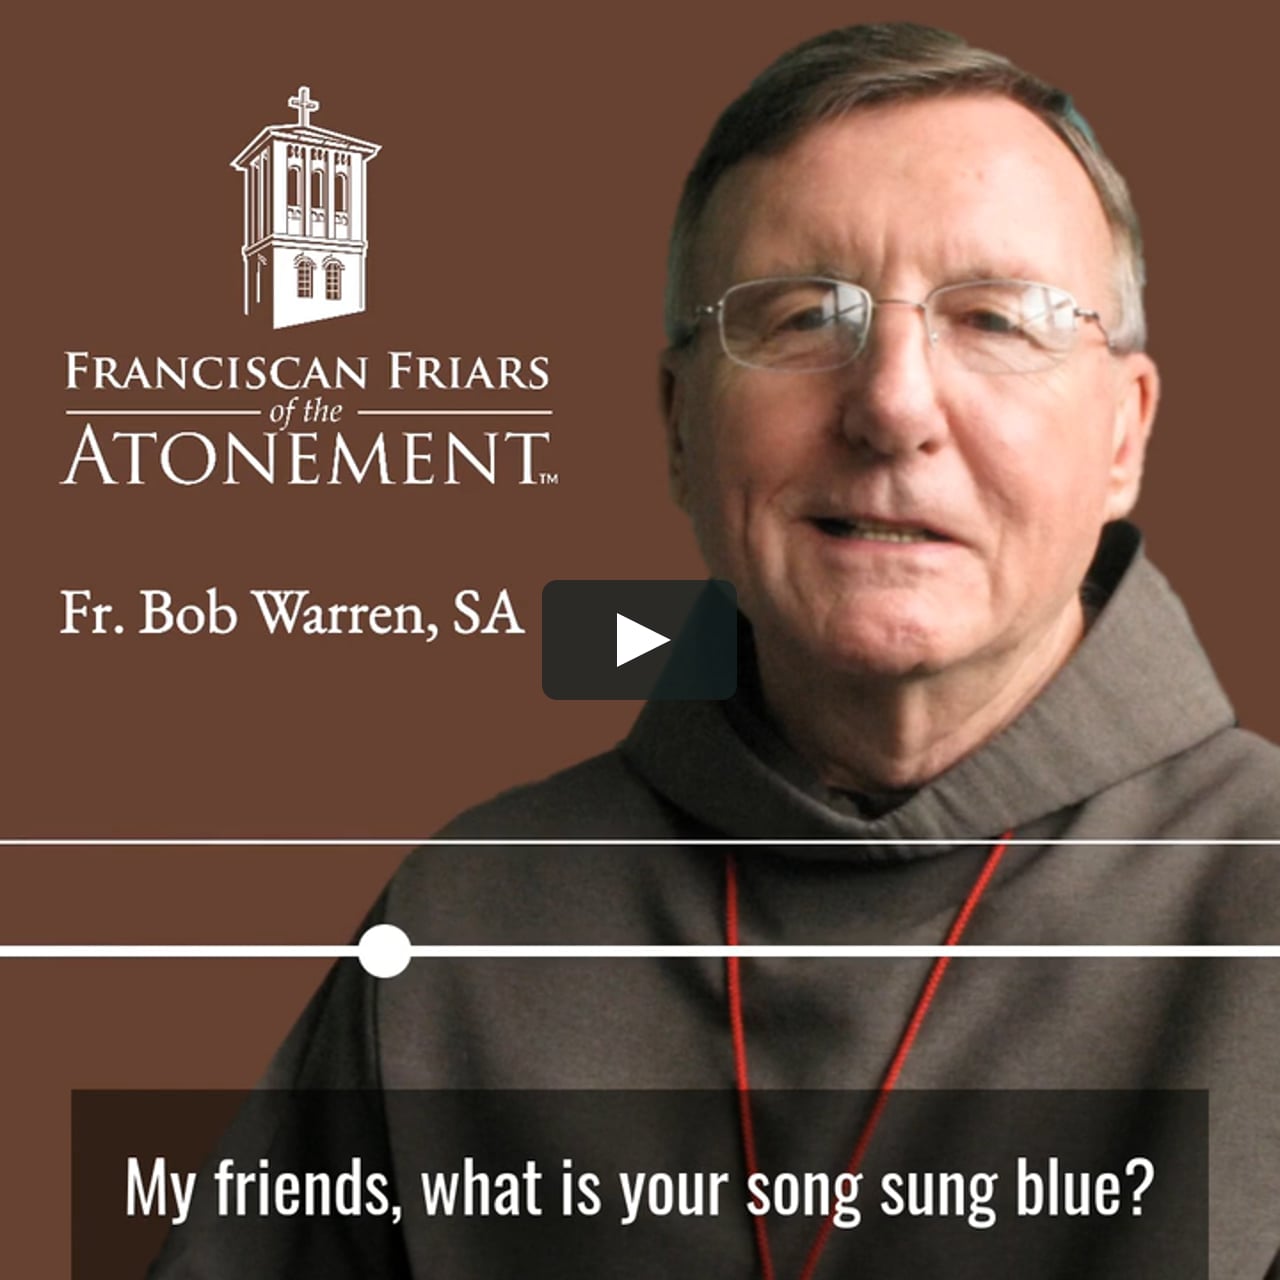 Fr. Bob Warren, SA: Homily for October 4, 2020 on Vimeo